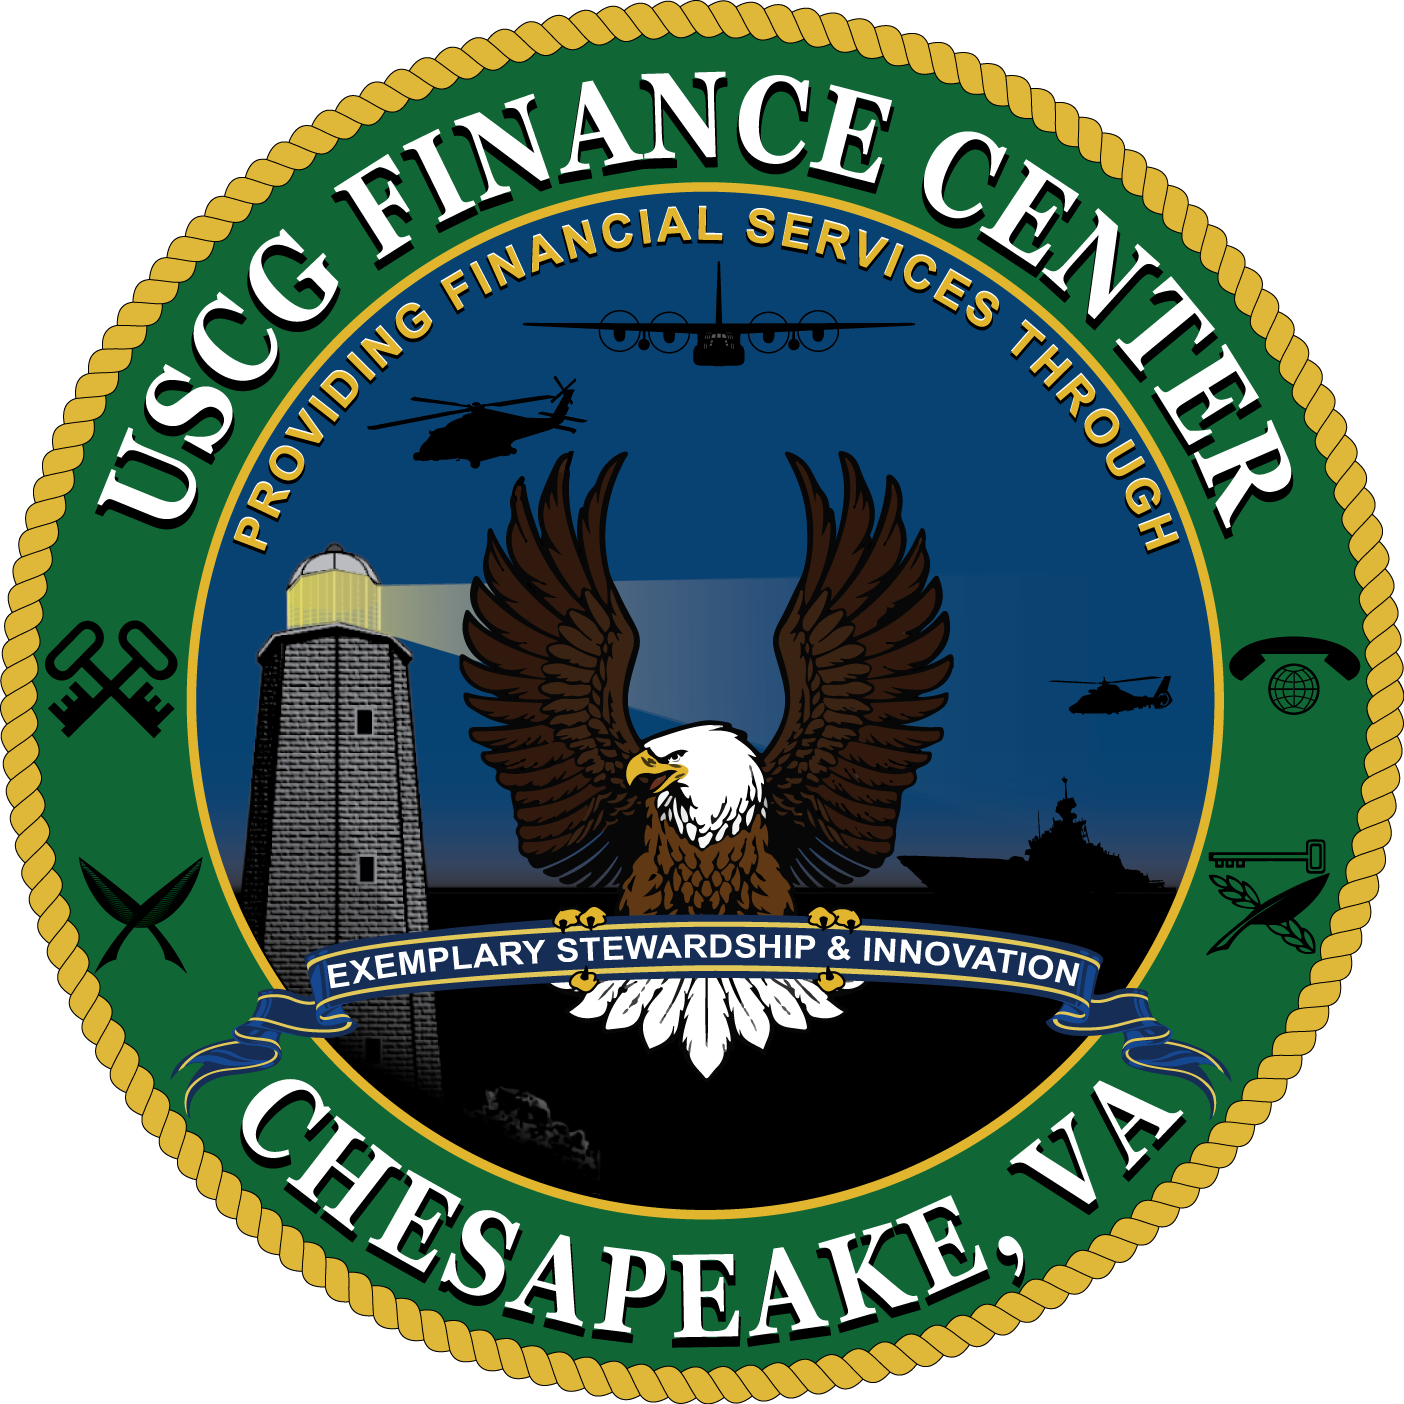 USCG Finance Center